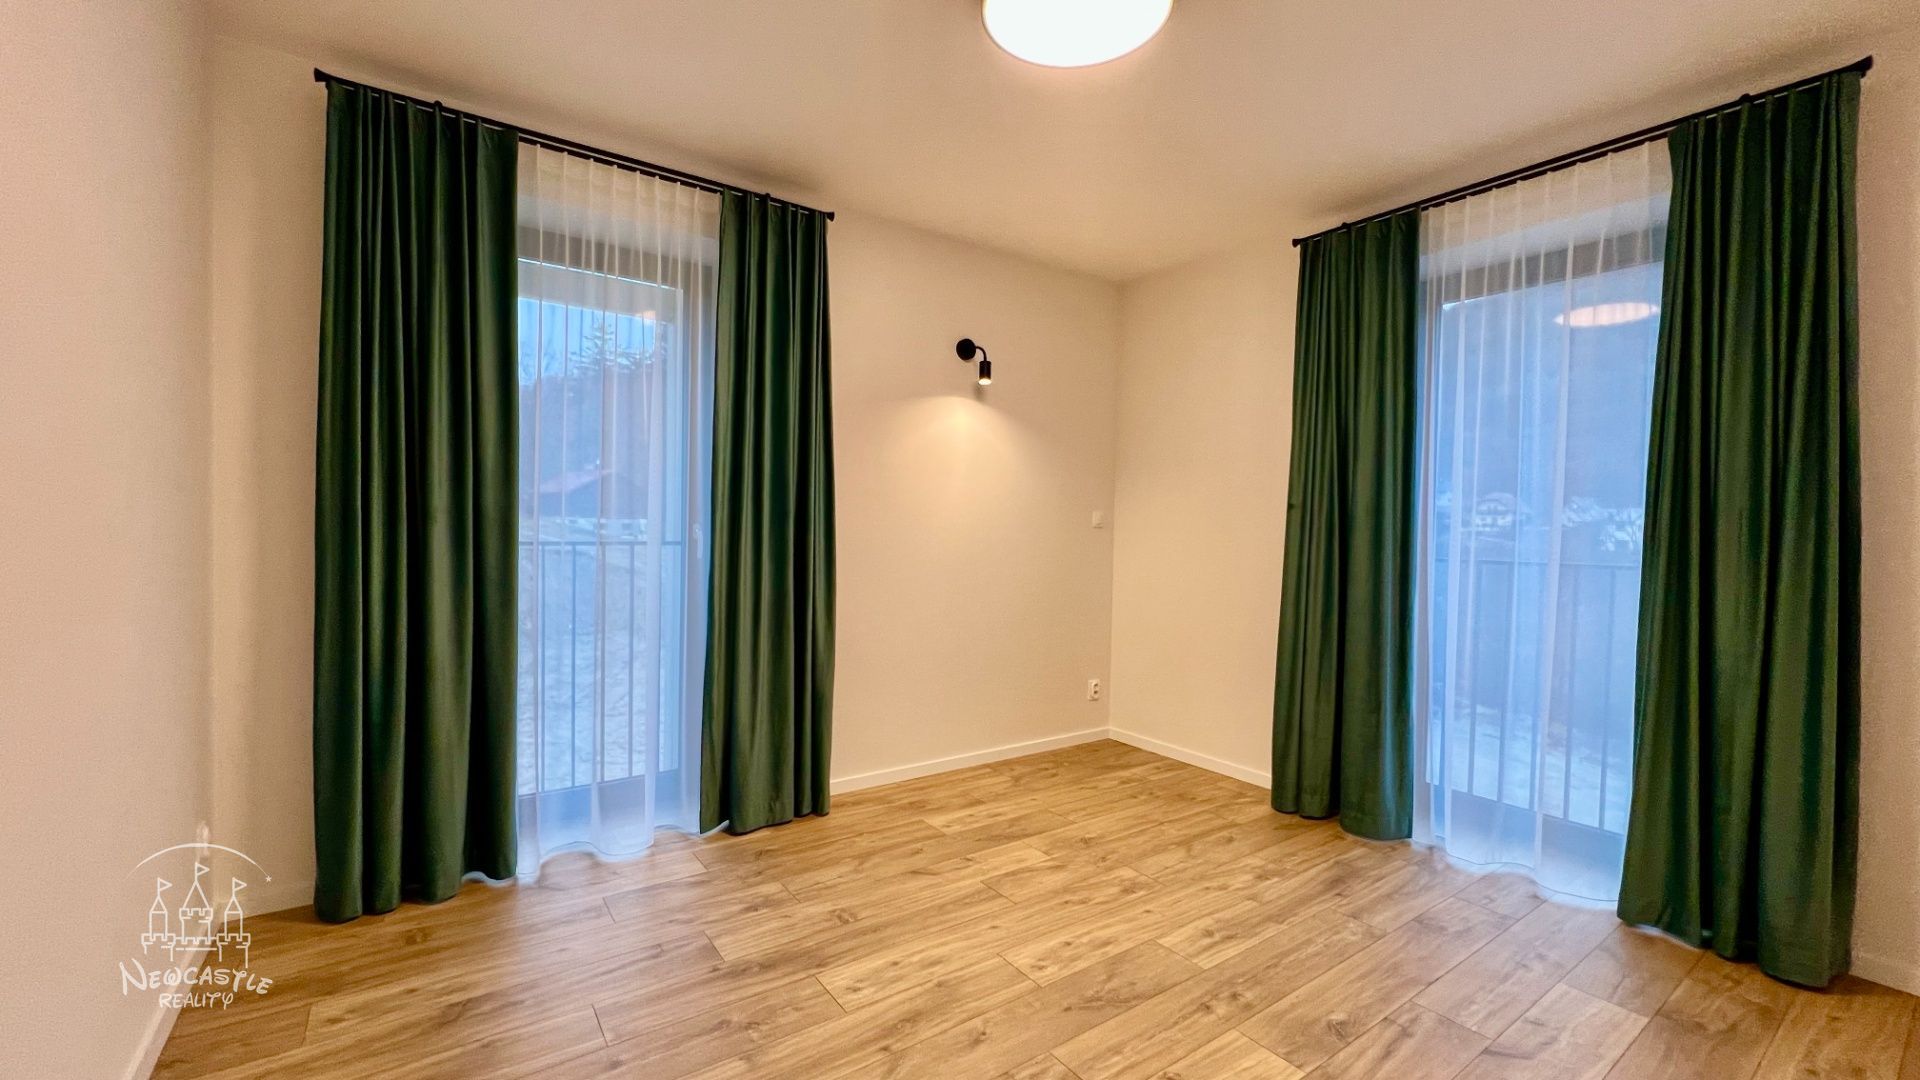 NEWCASTLE | Prenájom 3 izbového bytu v novostave Medvedica s 2 parkovacími miestami